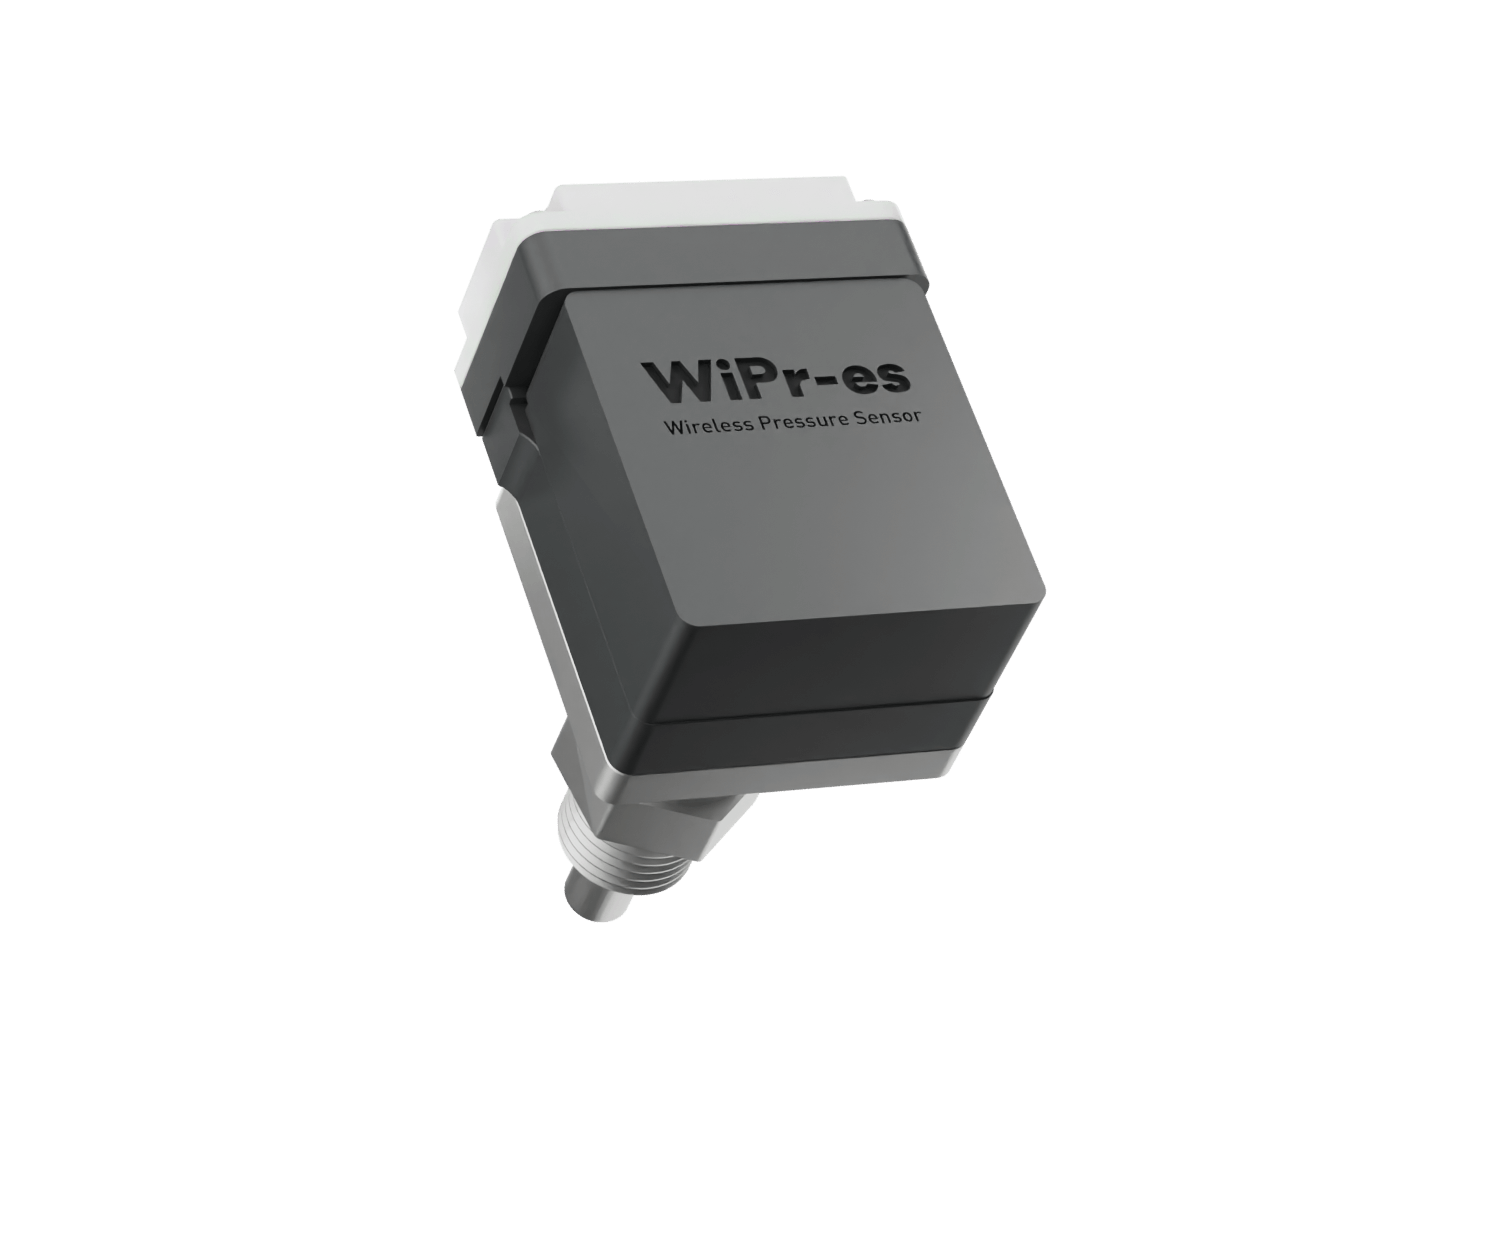 WiPr-es • Wireless Pressure Sensor